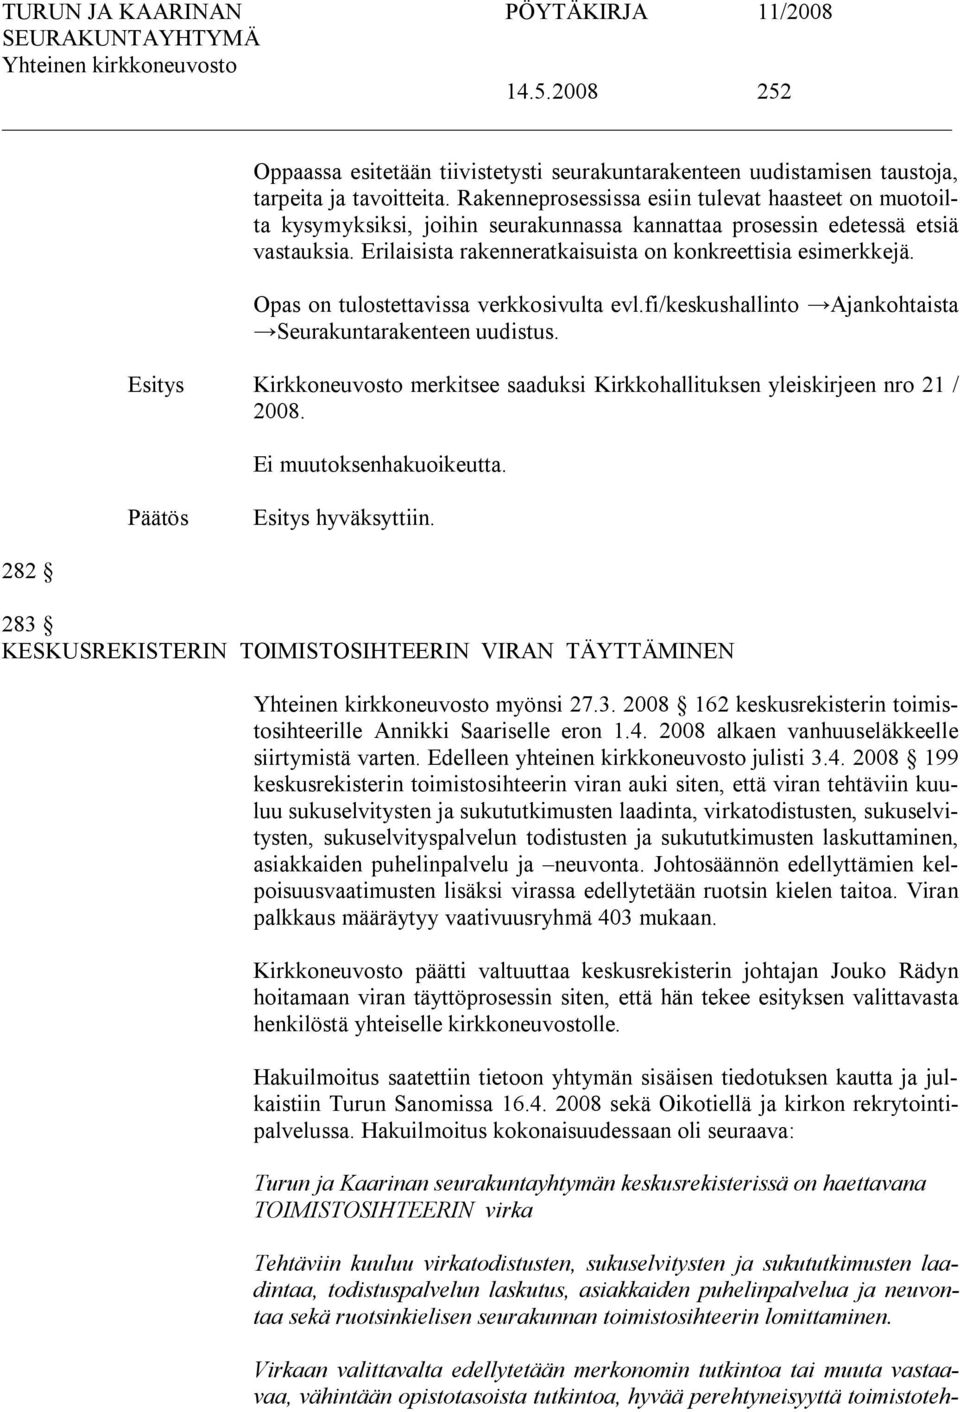 Opas on tulostettavissa verkkosivulta evl.fi/keskushallinto Ajankohtaista Seurakuntarakenteen uudistus. Kirkkoneuvosto merkitsee saaduksi Kirkkohallituksen yleiskirjeen nro 21 / 2008.